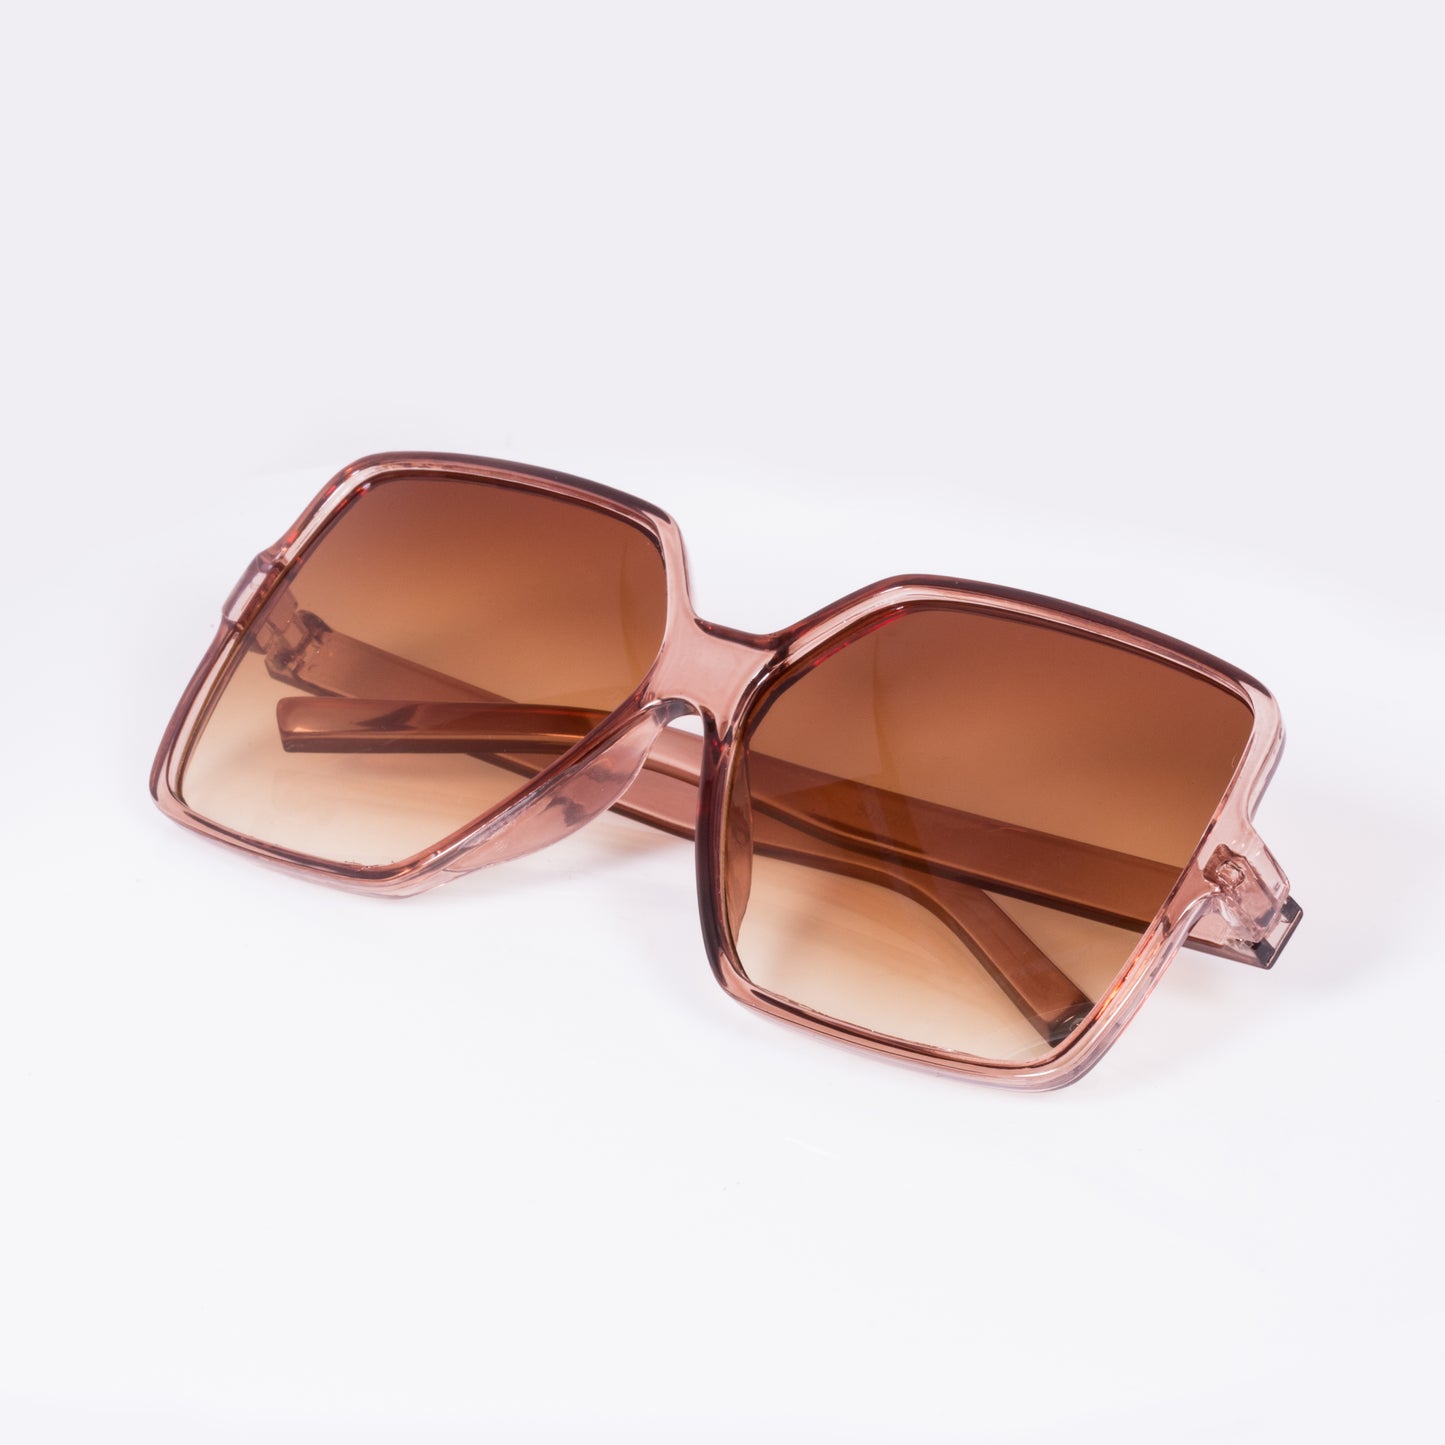 Módní sluneční brýle s plastovými obroučkami s filtrem UV400